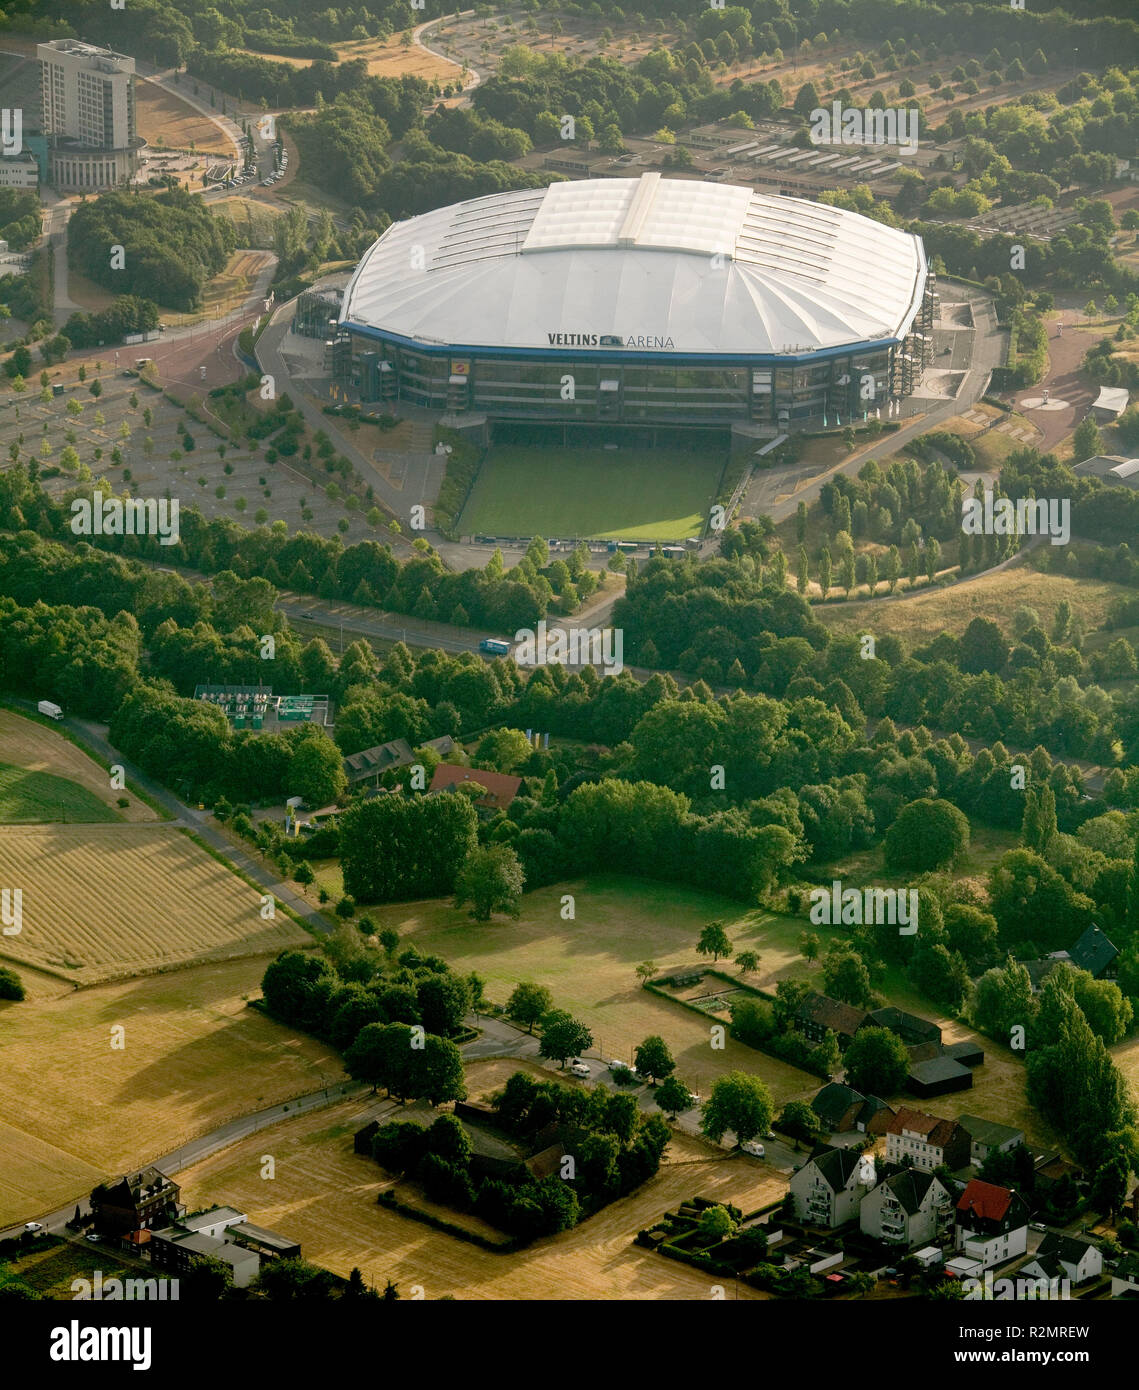 Luftaufnahme, Schalke Arena, Veltins Arena, Buer, Gelsenkirchen, Ruhrgebiet, Nordrhein-Westfalen, Deutschland, Europa, Stockfoto